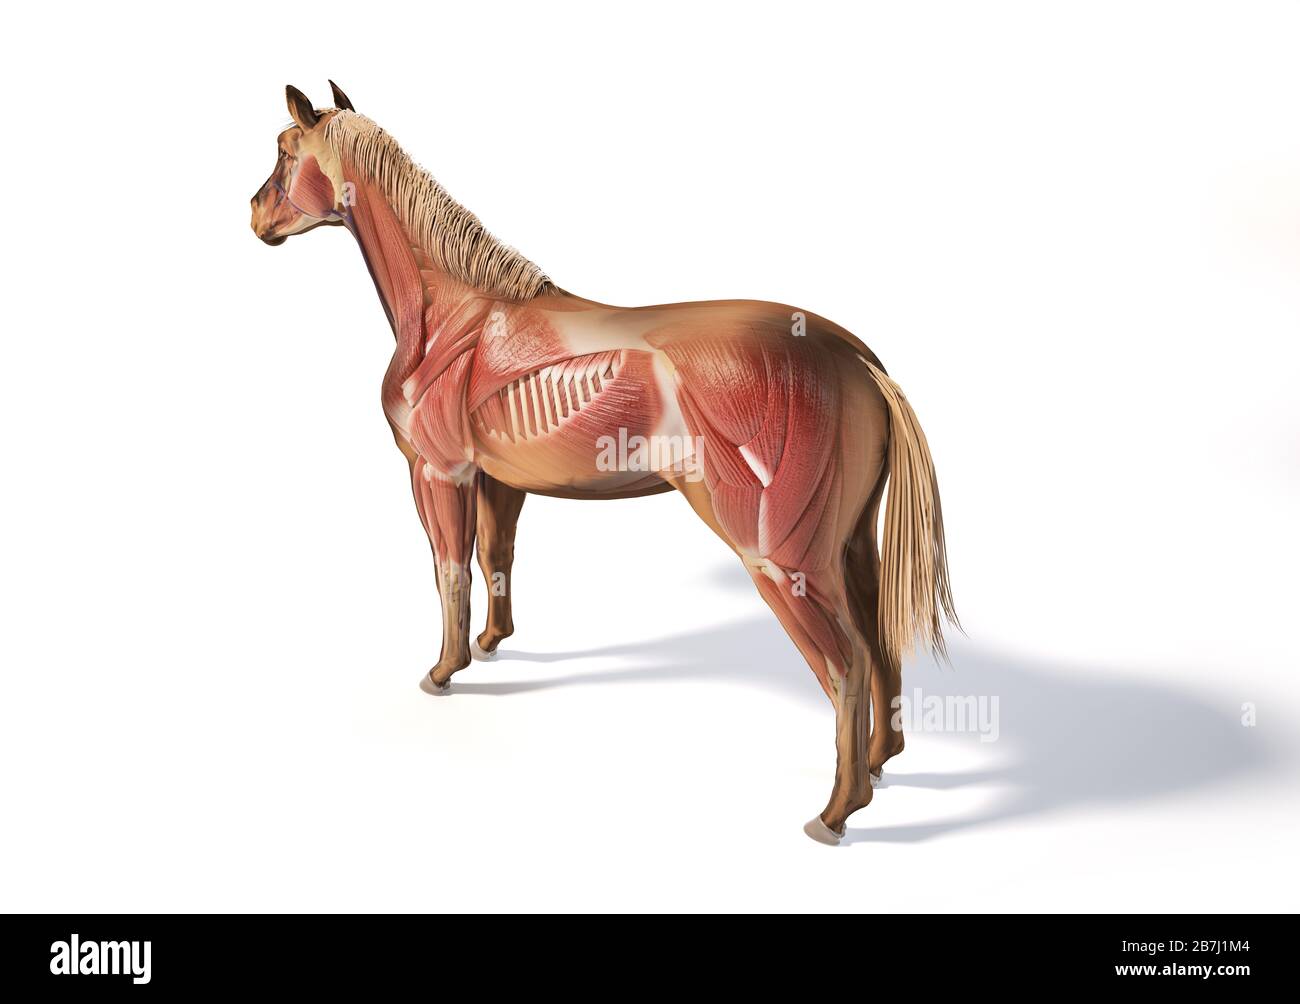 Pferdeanatomie. Muskuläres System mit Geistereffekt. Hinten - Vogelperspektive der Seitenauge auf weißem Hintergrund. Beschneidungspfad enthalten. Stockfoto